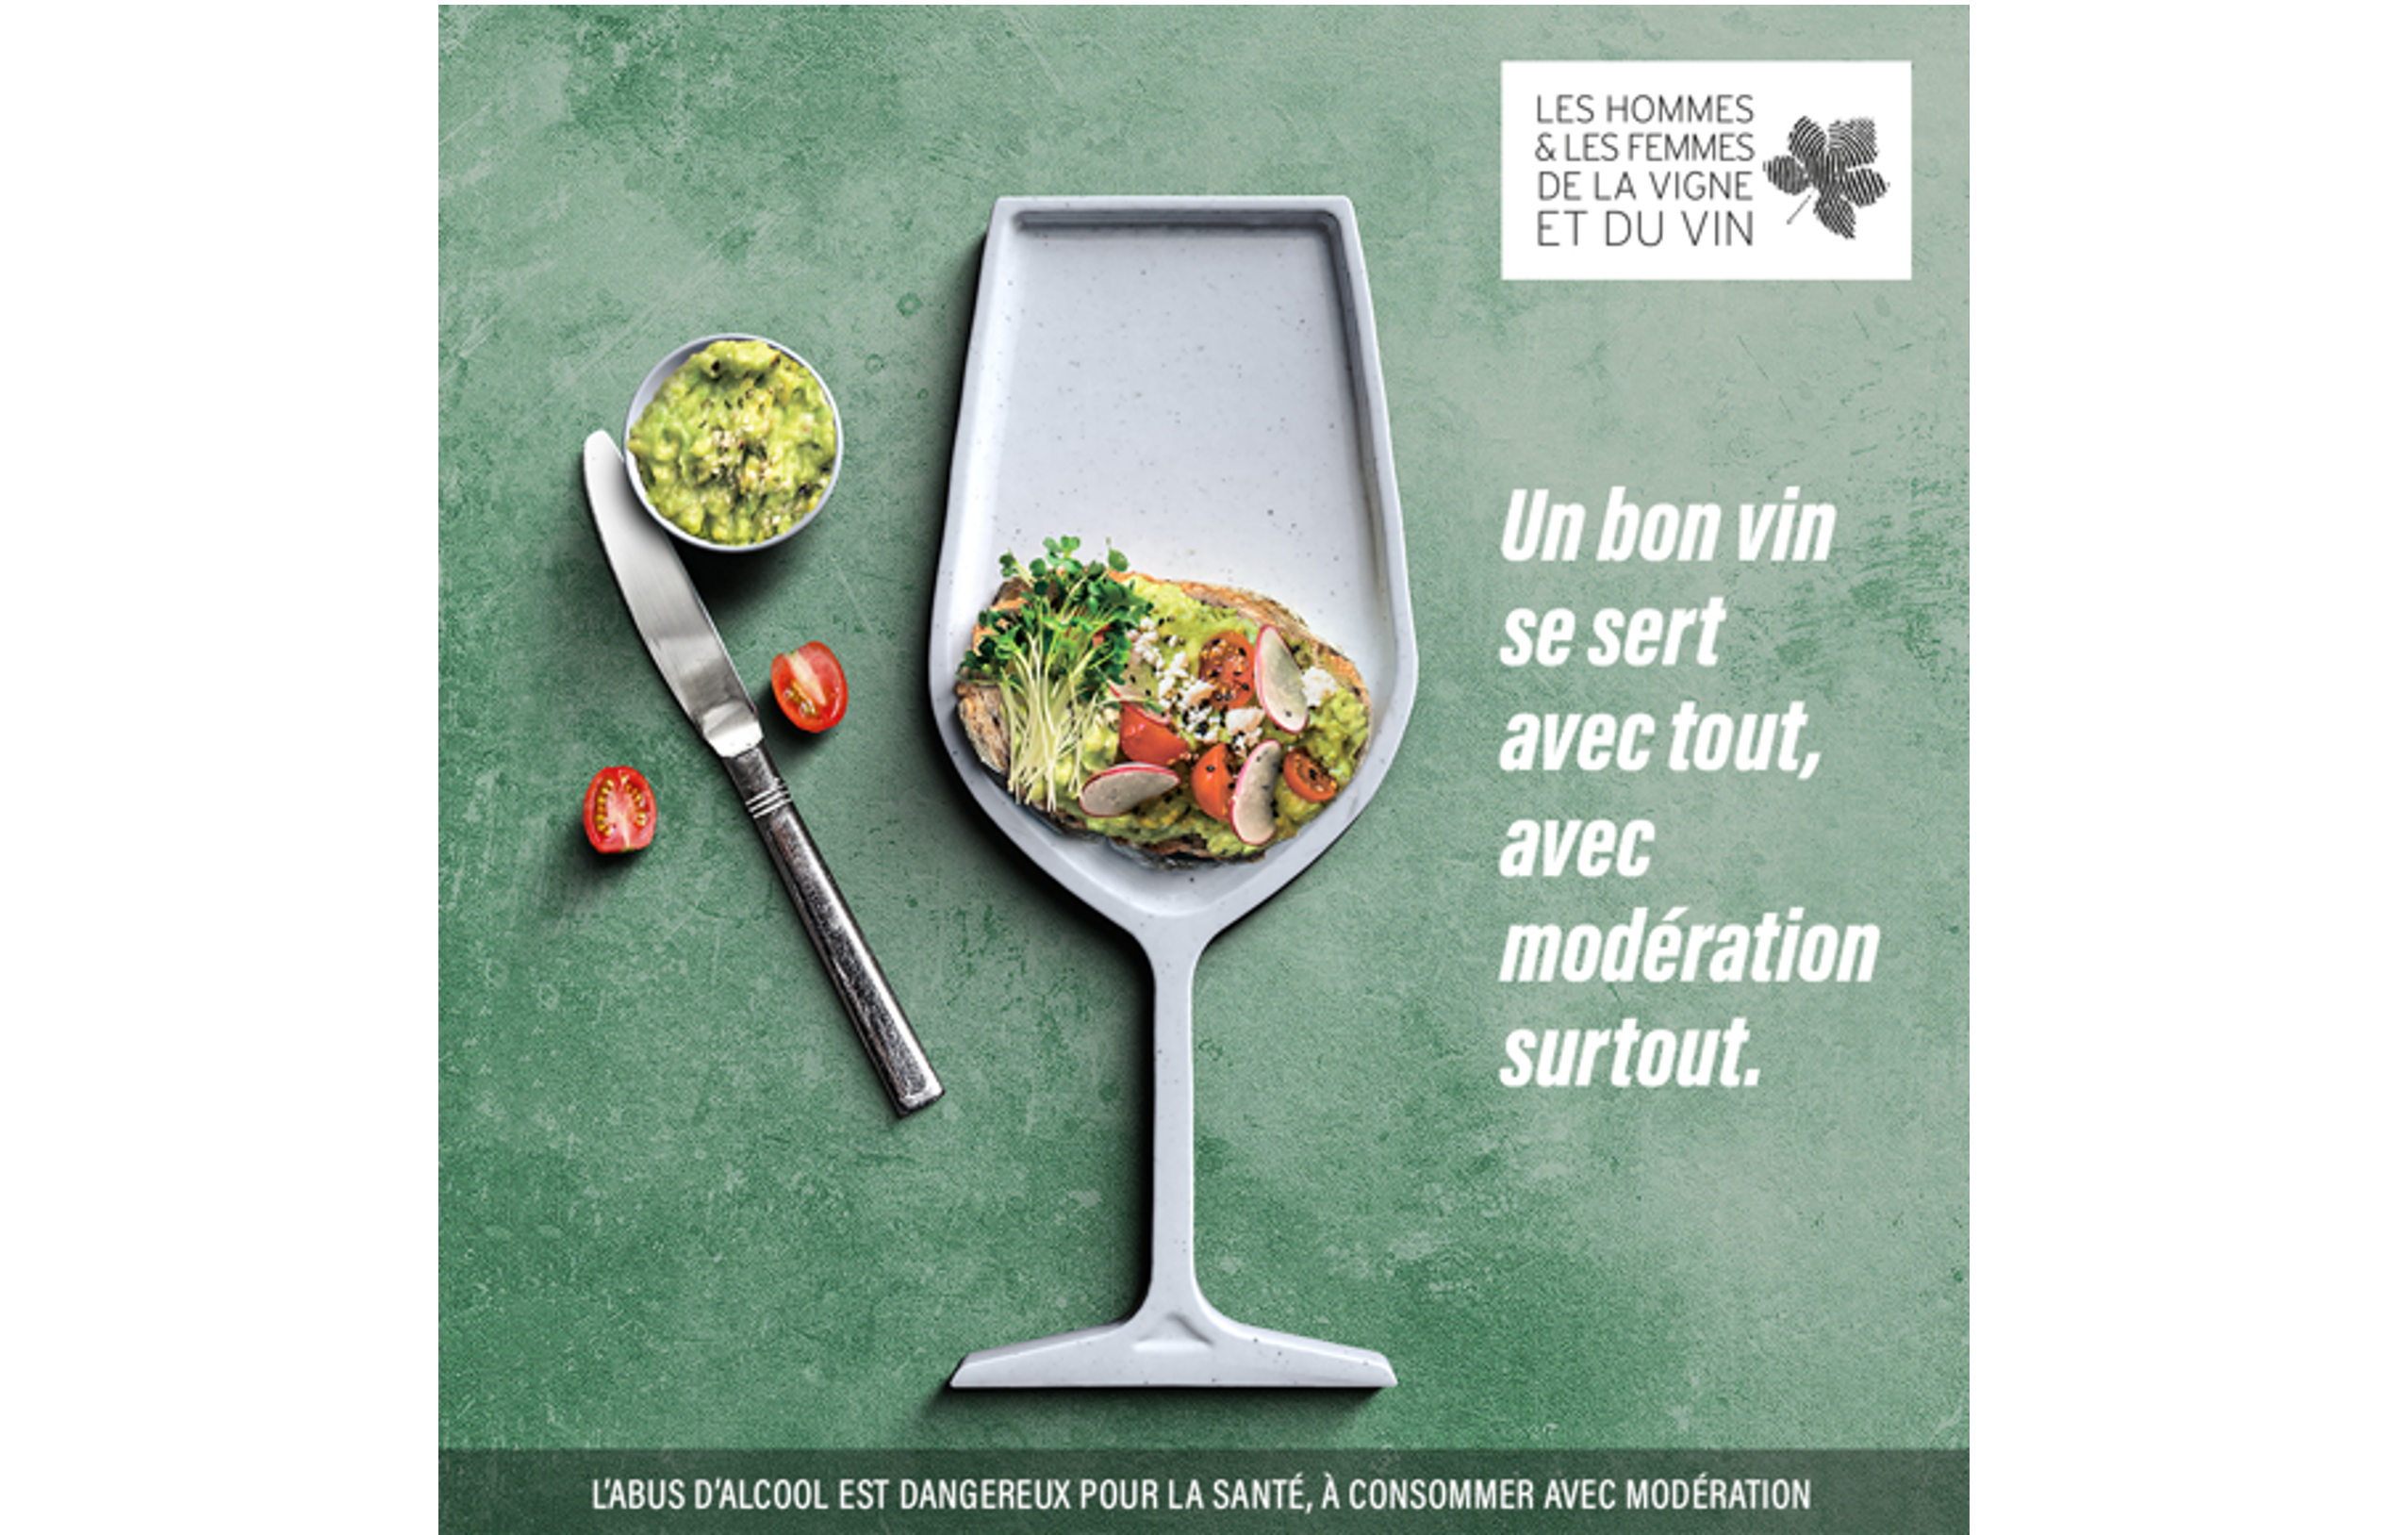 Vin et Société : campagne digitale "modération"